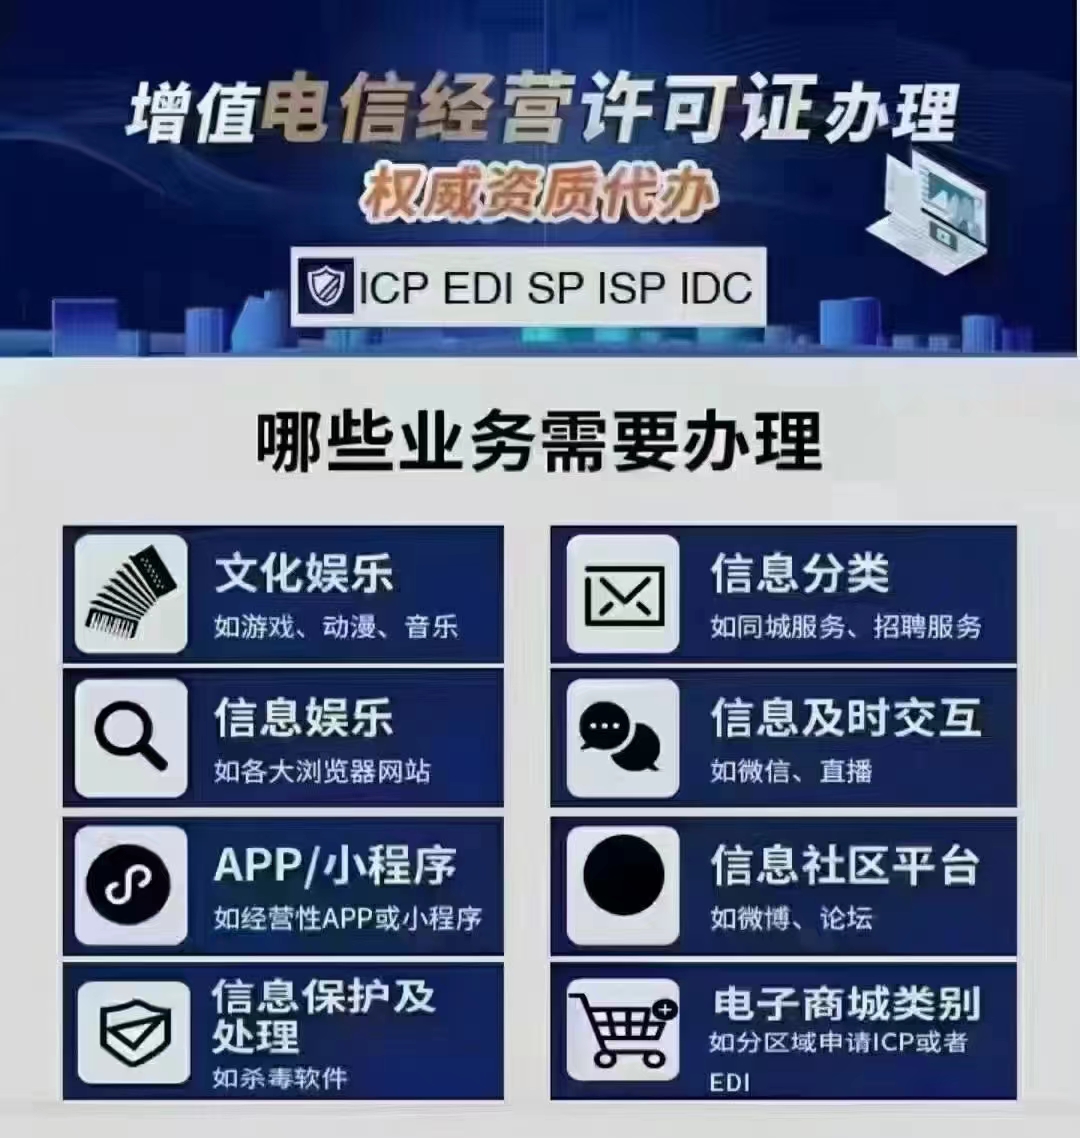 具体流程北京市大兴区ICP许可证指南条件